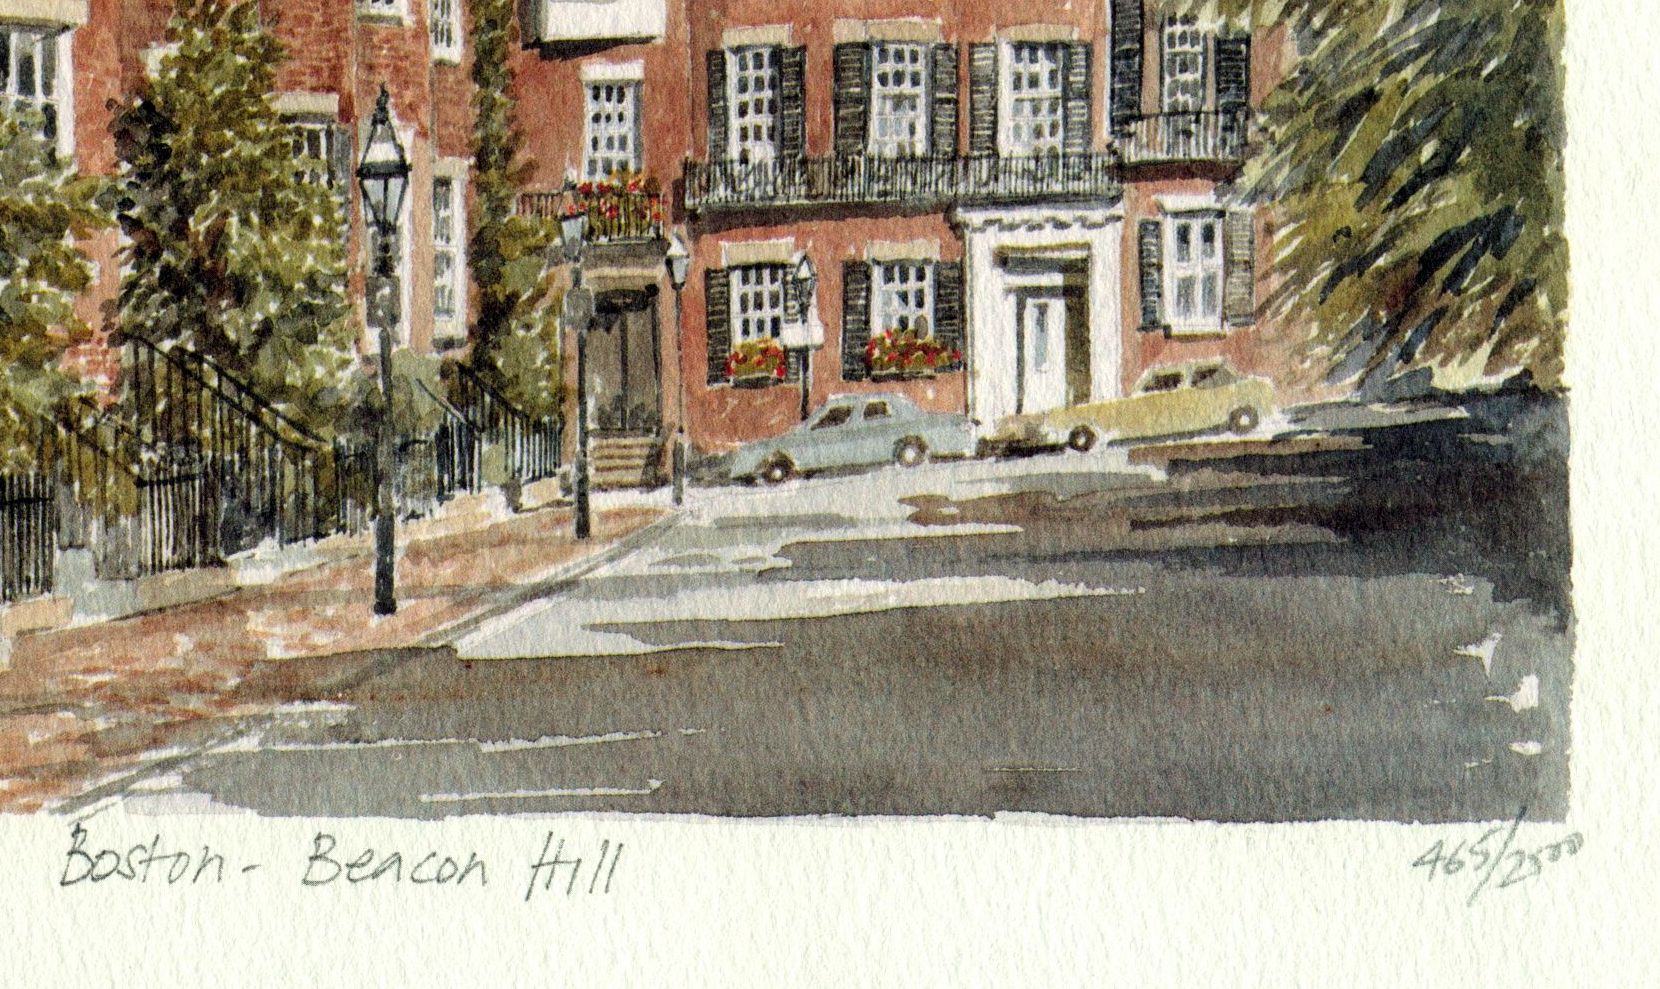 Beacon Hill in Boston